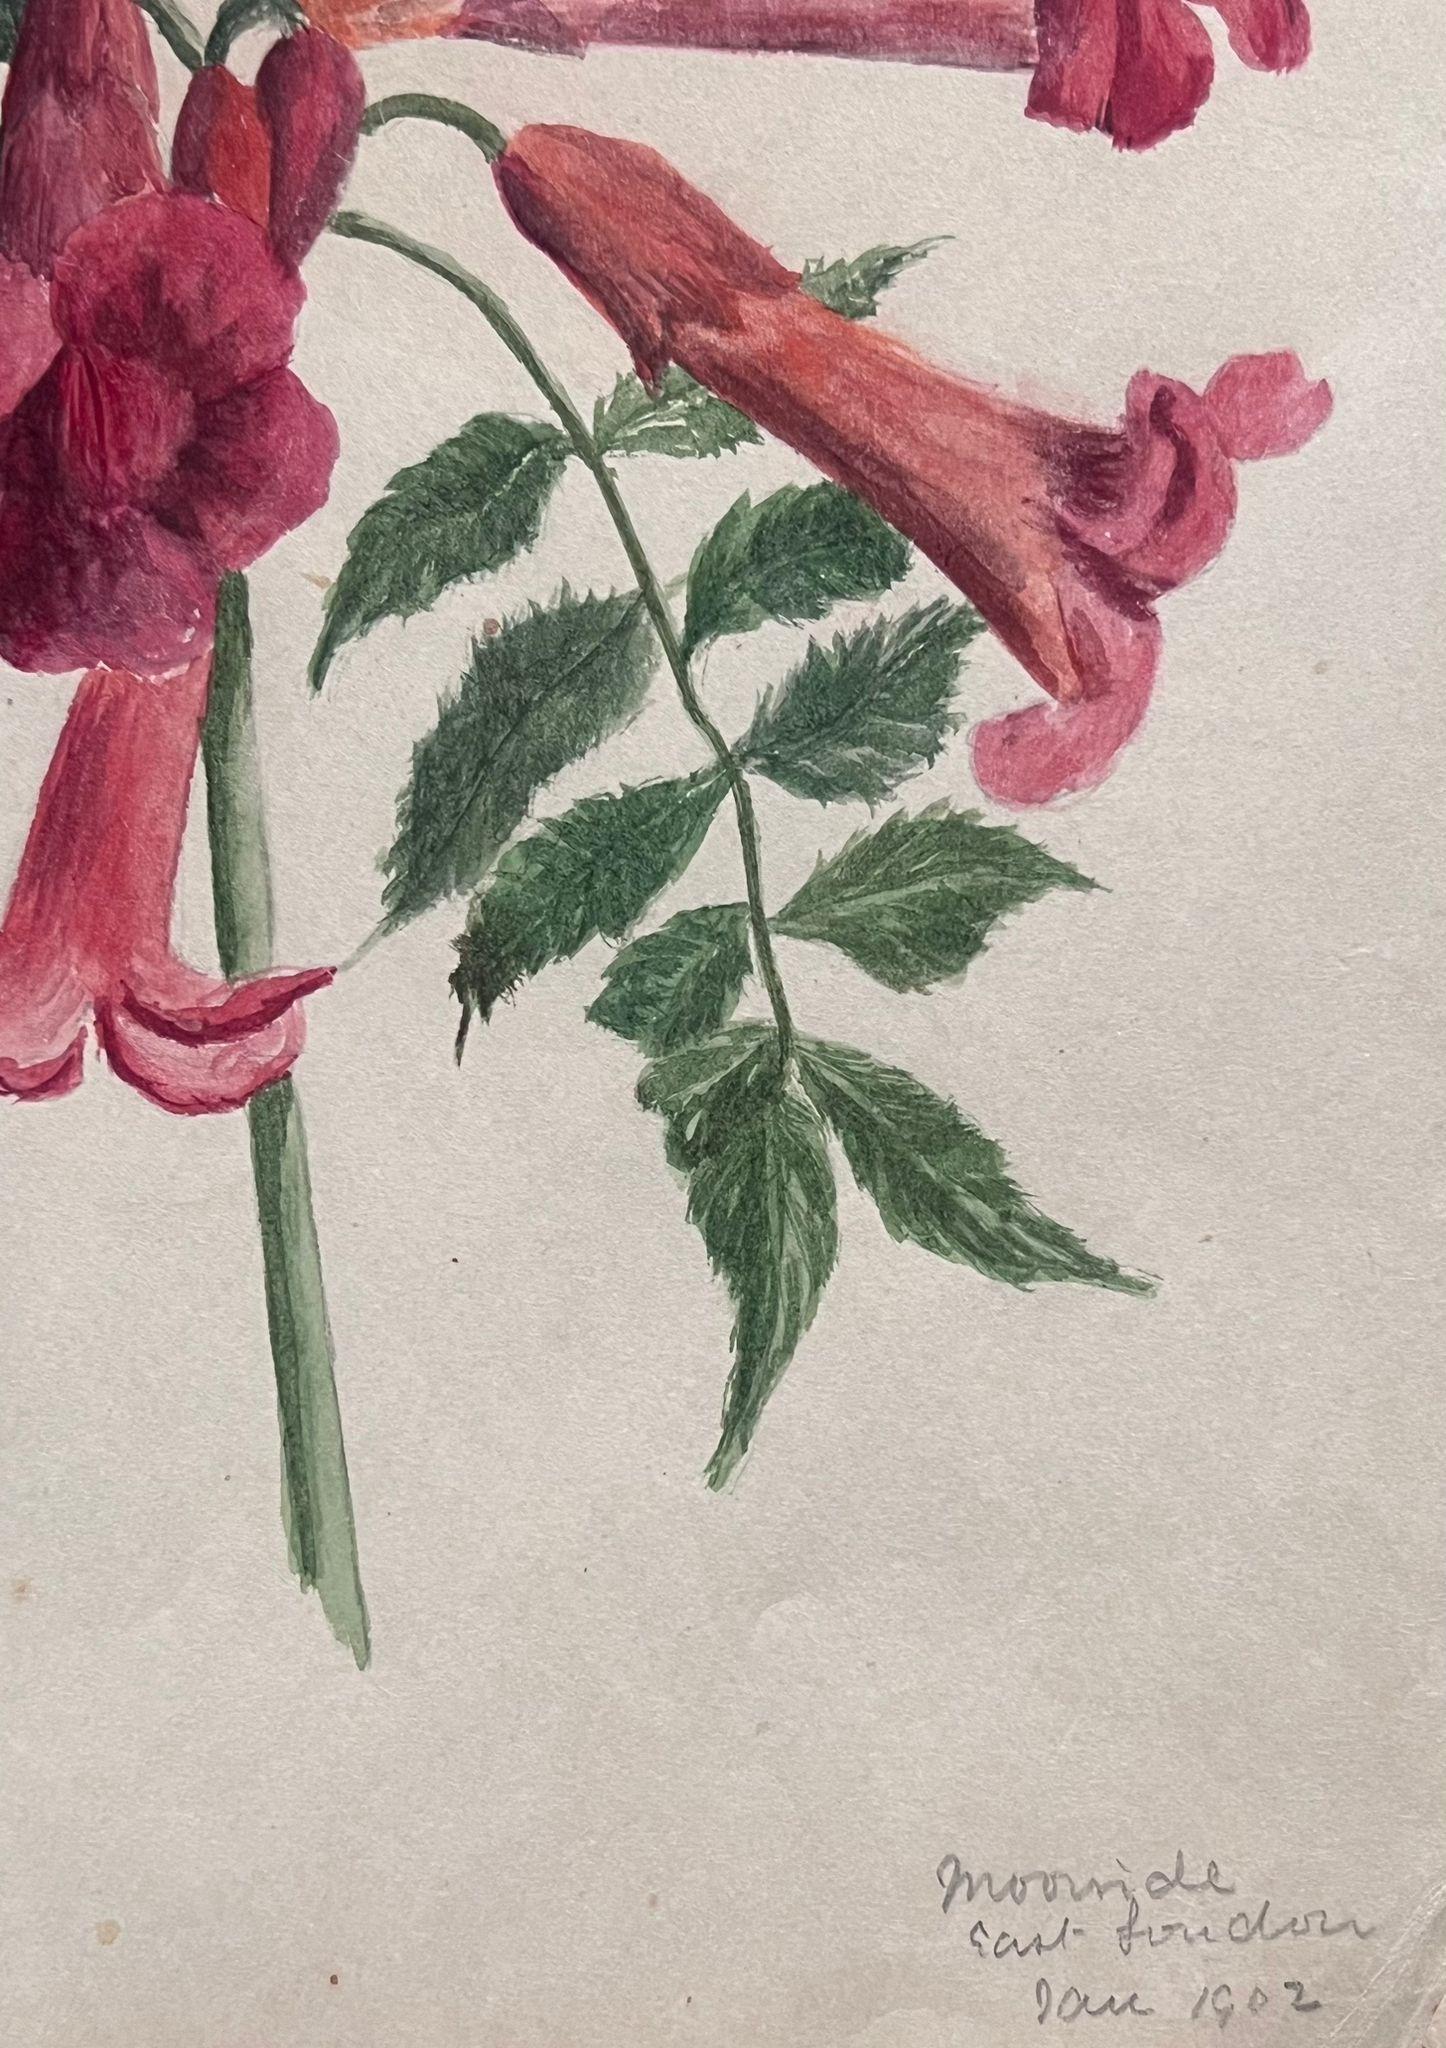 Très belles aquarelles botaniques anglaises anciennes représentant cette magnifique représentation d'une fleur/plante. L'œuvre nous est parvenue d'une collection privée du Surrey, en Angleterre, et faisait partie d'un album d'œuvres rassemblées par